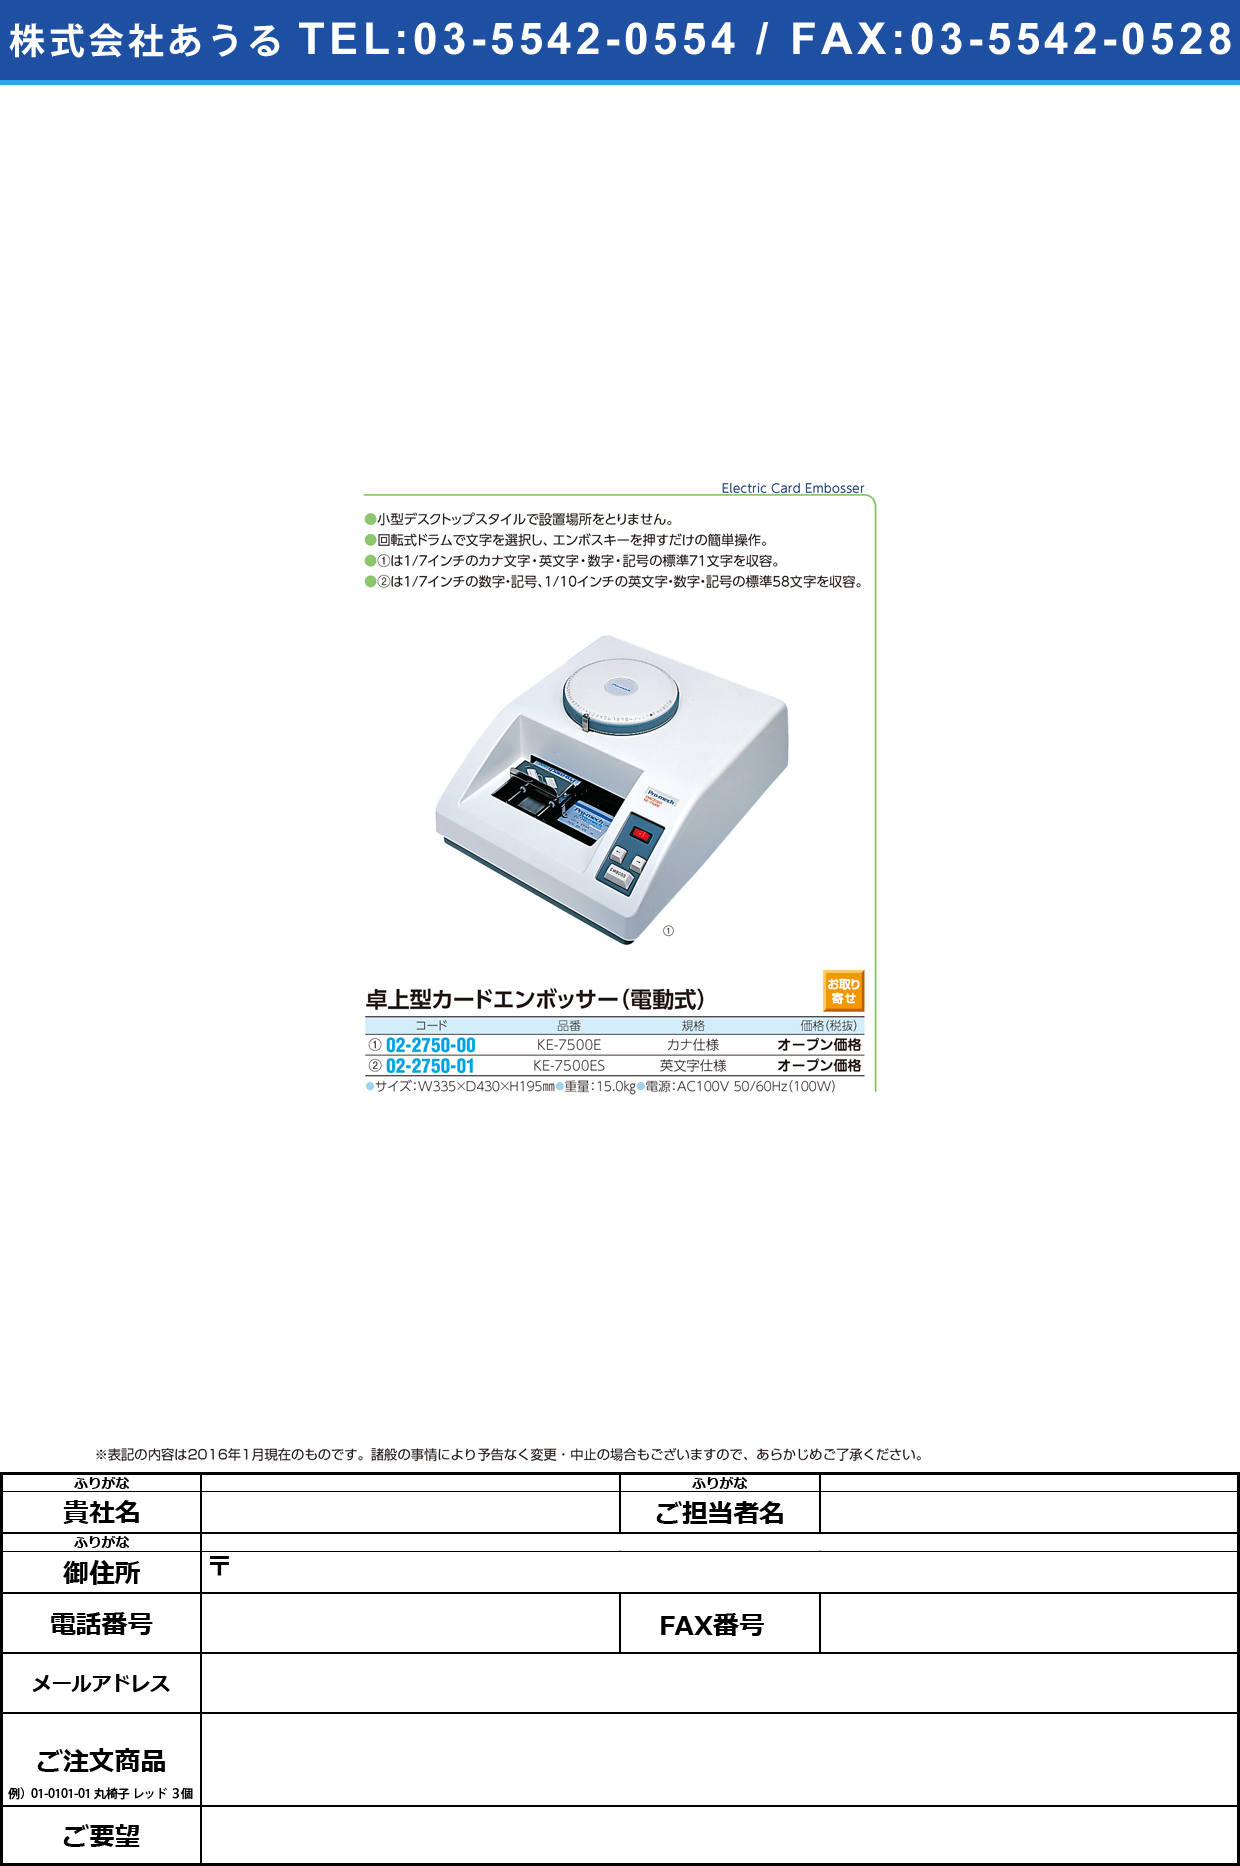 (02-2750-00)卓上型カードエンボッサー（電動式） ﾀｸｼﾞｮｳｶｰﾄﾞｴﾝﾎﾞｯｻｰ KE-7500E(ｶﾅｼﾖｳ)【1台単位】【2016年カタログ商品】